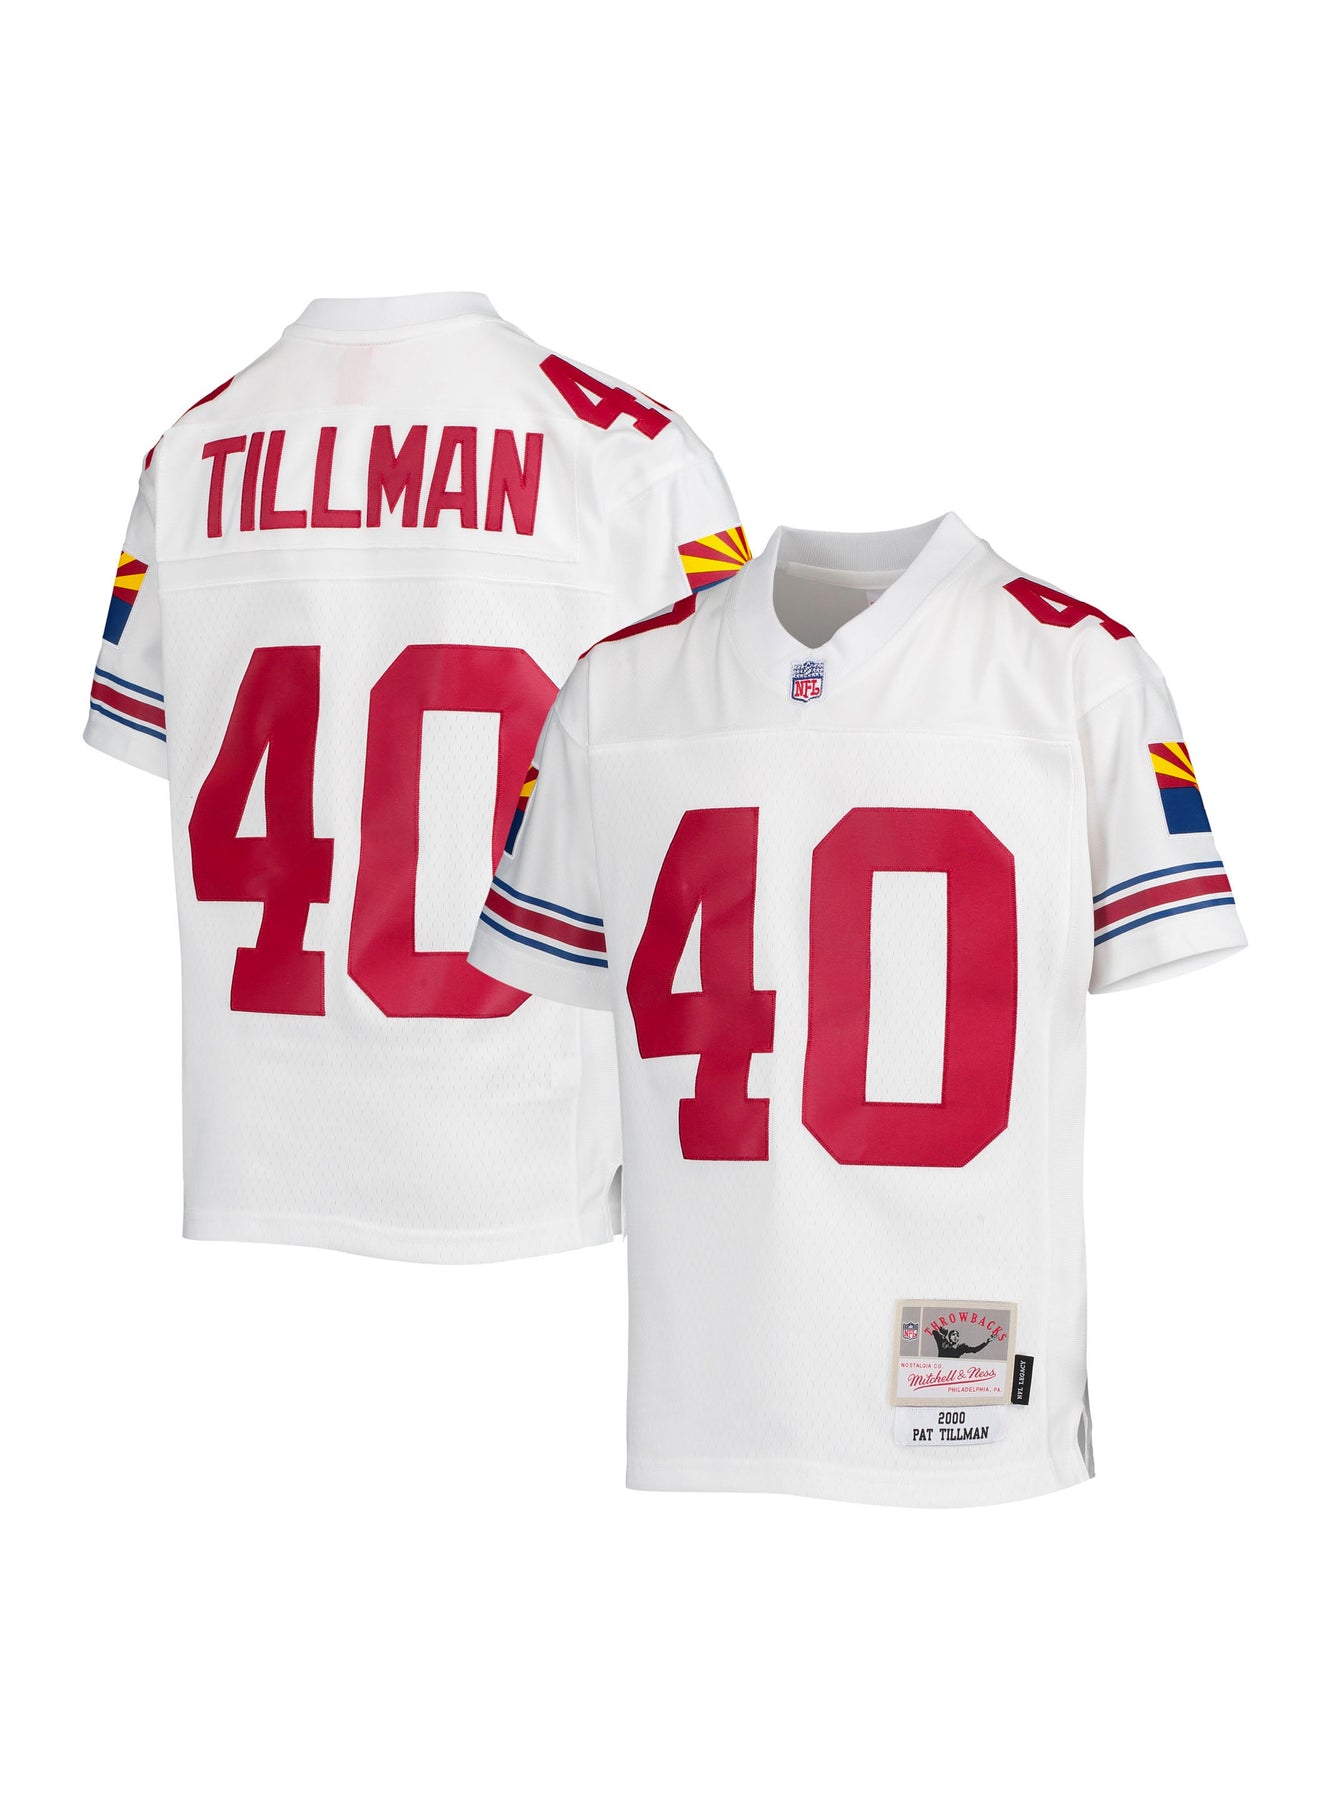 NFL Youth Throwback Jerseys - Arizona Cardinals Pat Tillman & more